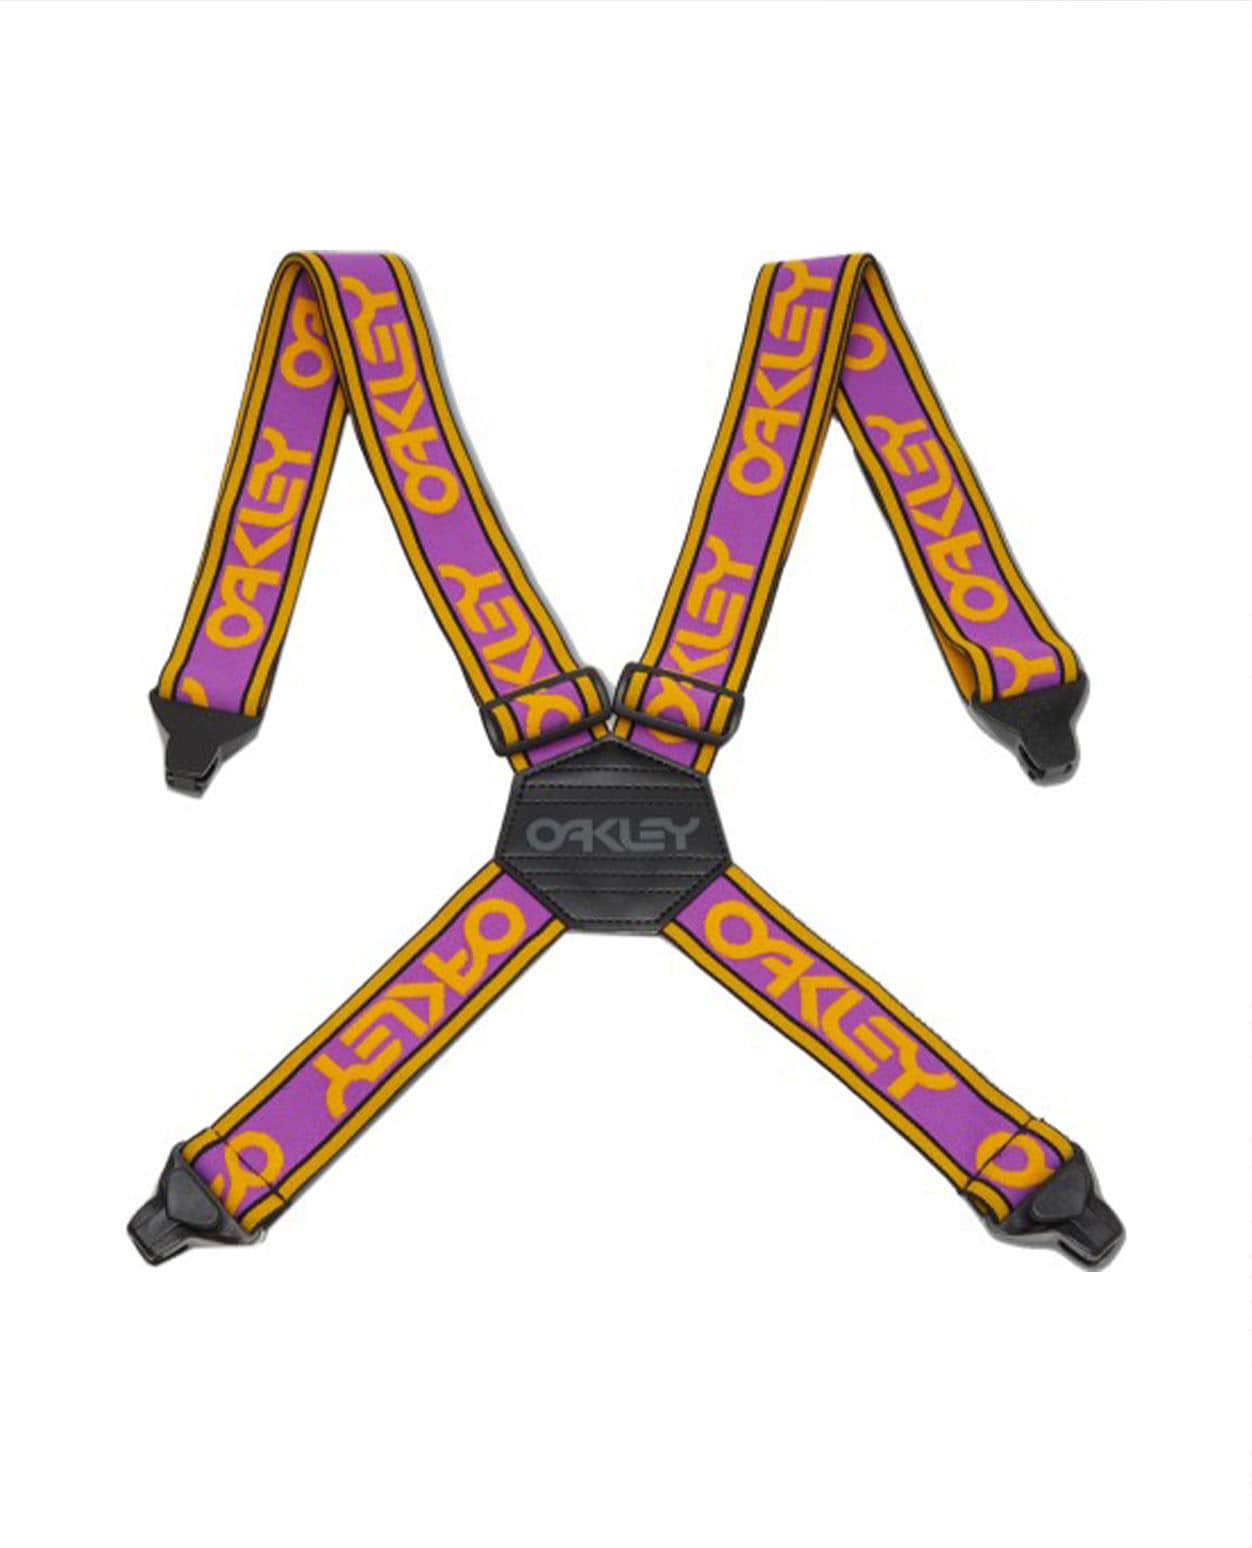 Oakley Factory Suspenders Ultra Purple Amber Yellow